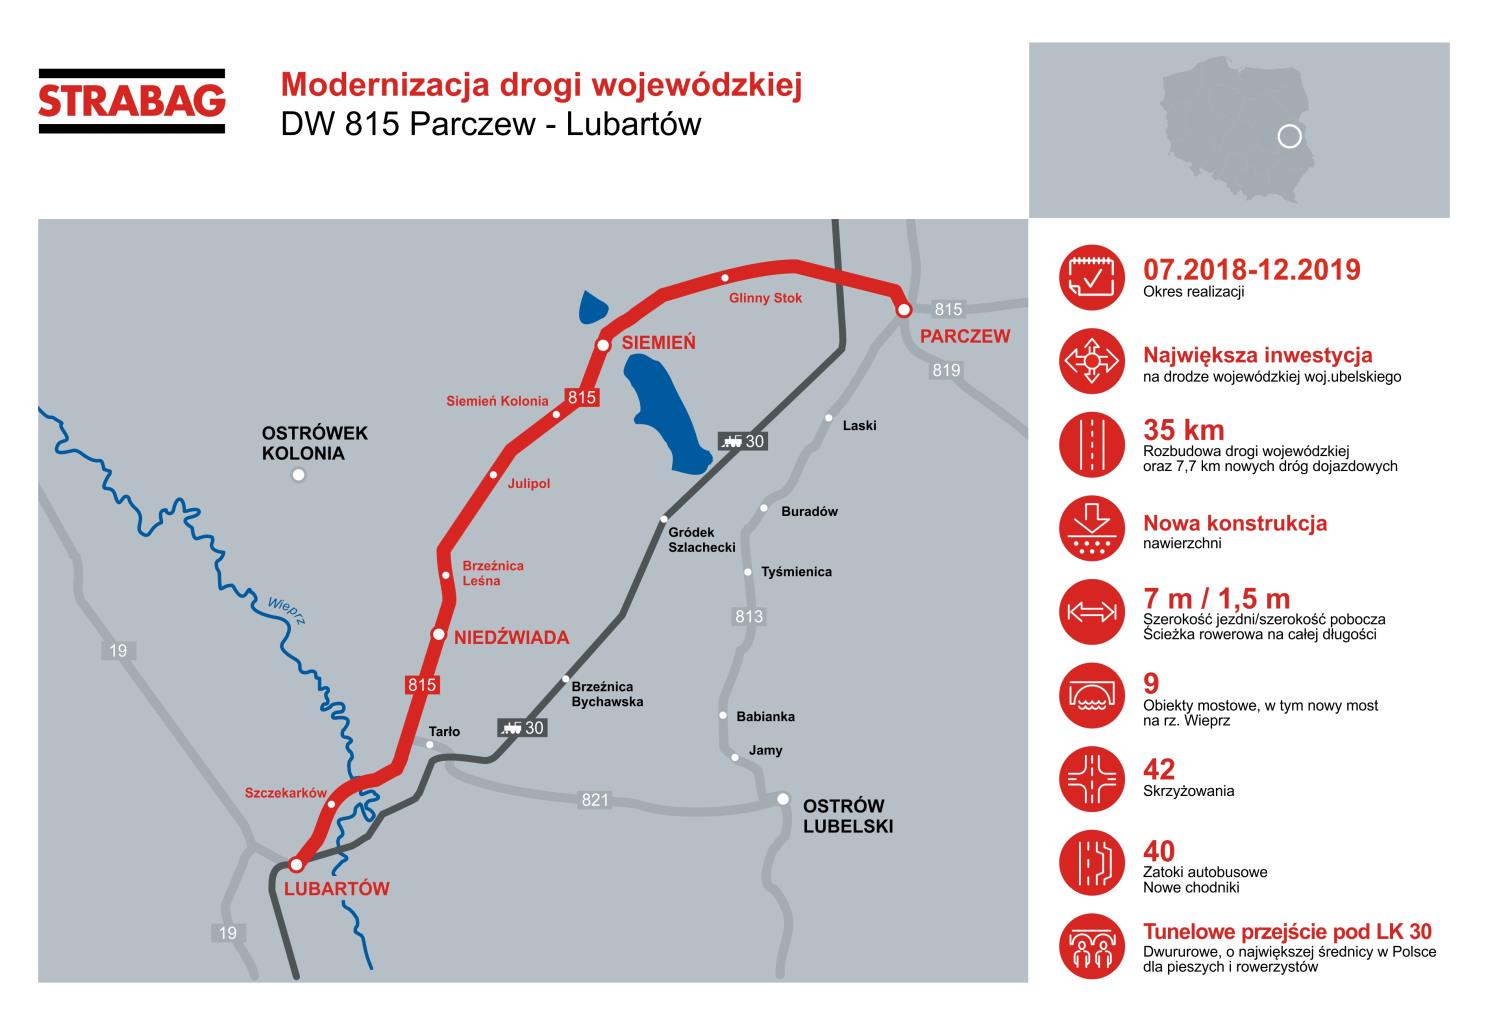 Mapka_modernizacja drogi wojewódzkiej DW 815 Parczew-Lubartów.jpg